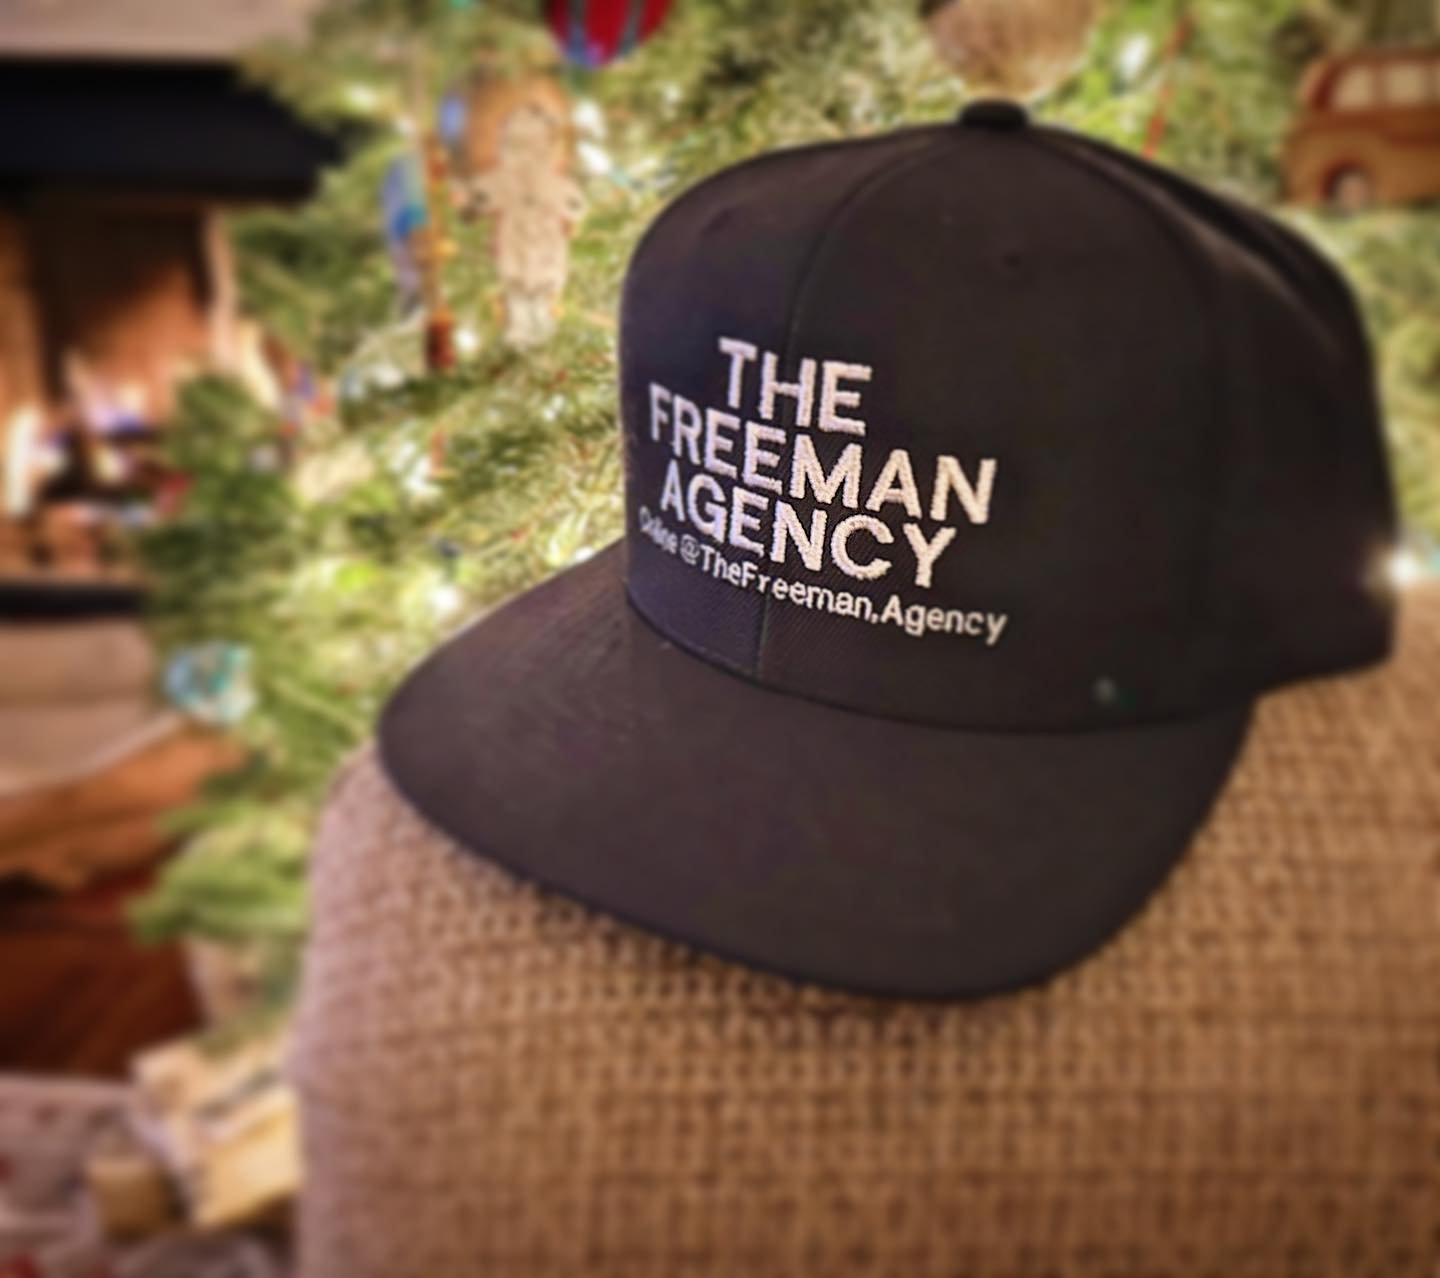 Happy Friday, and happy holidays from The Freeman Agency 🎄✌️❤️

#thefreemanagency #happyholidayssantamonica #familytree #datacentricmarketing